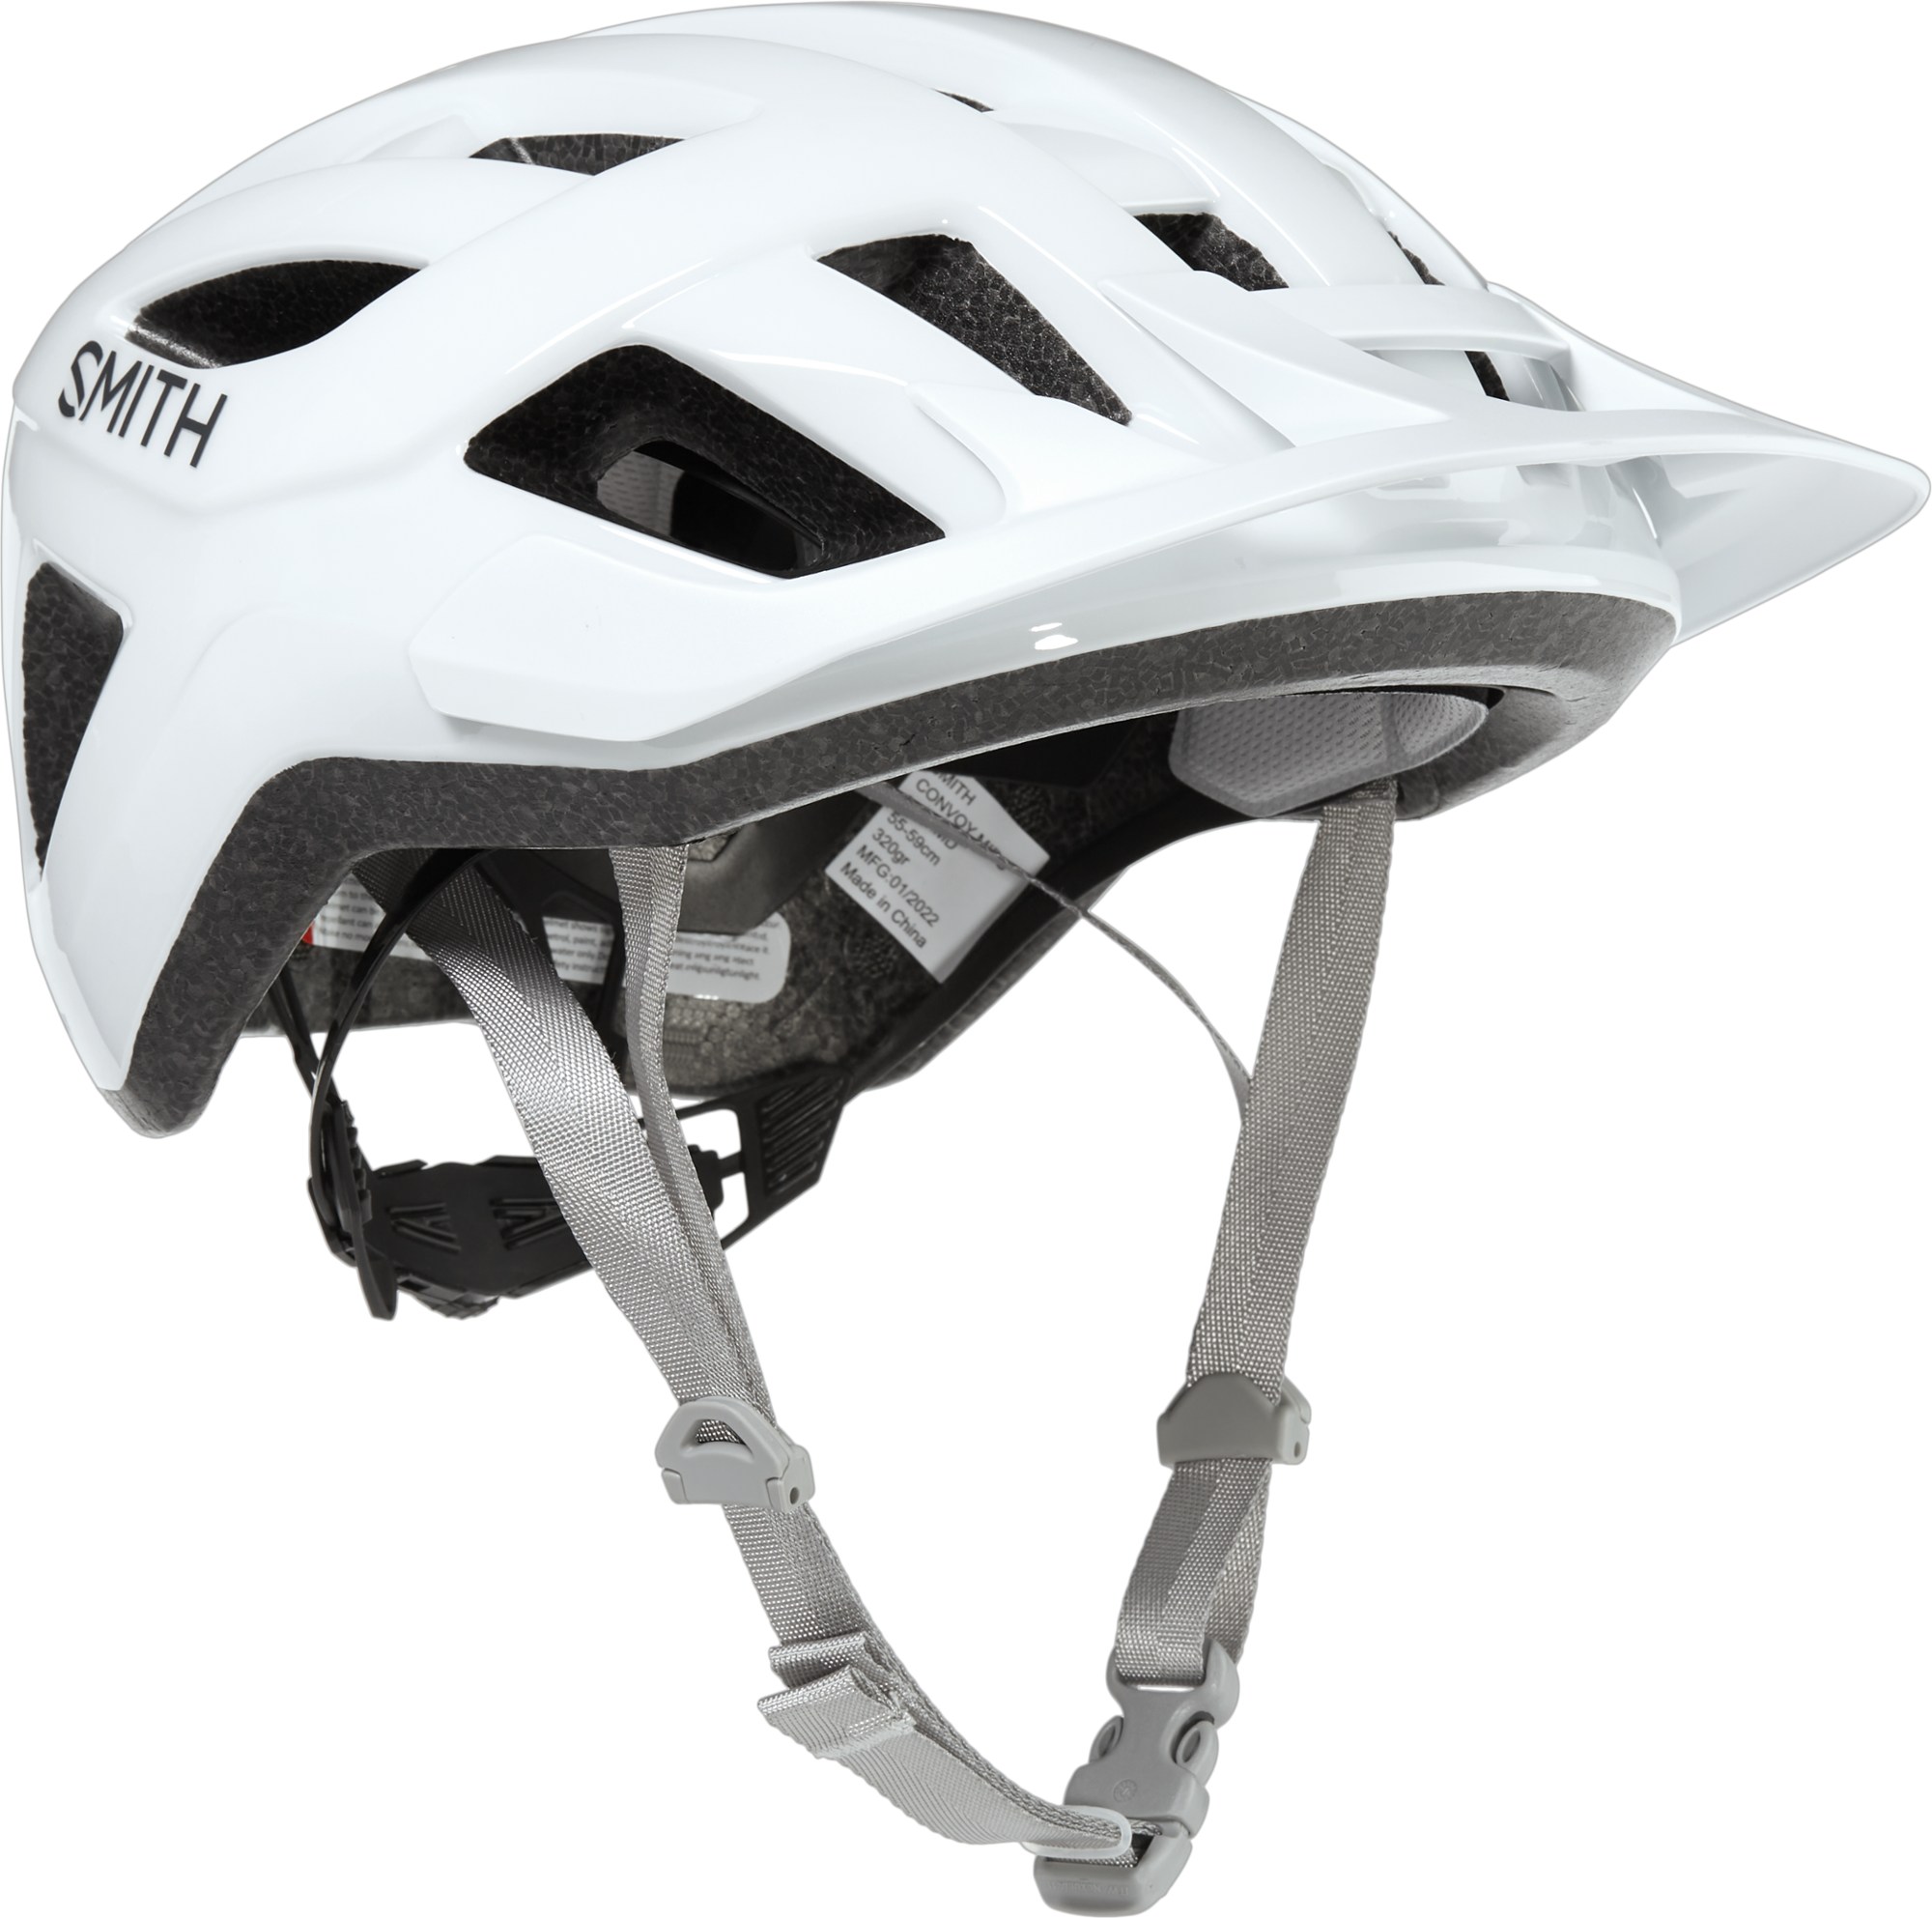 Велосипедный шлем Convoy MIPS Smith, белый шлем велосипедный sisak универсальный всесезонный детский спортивный шлем для горных велосипедов cobwebs